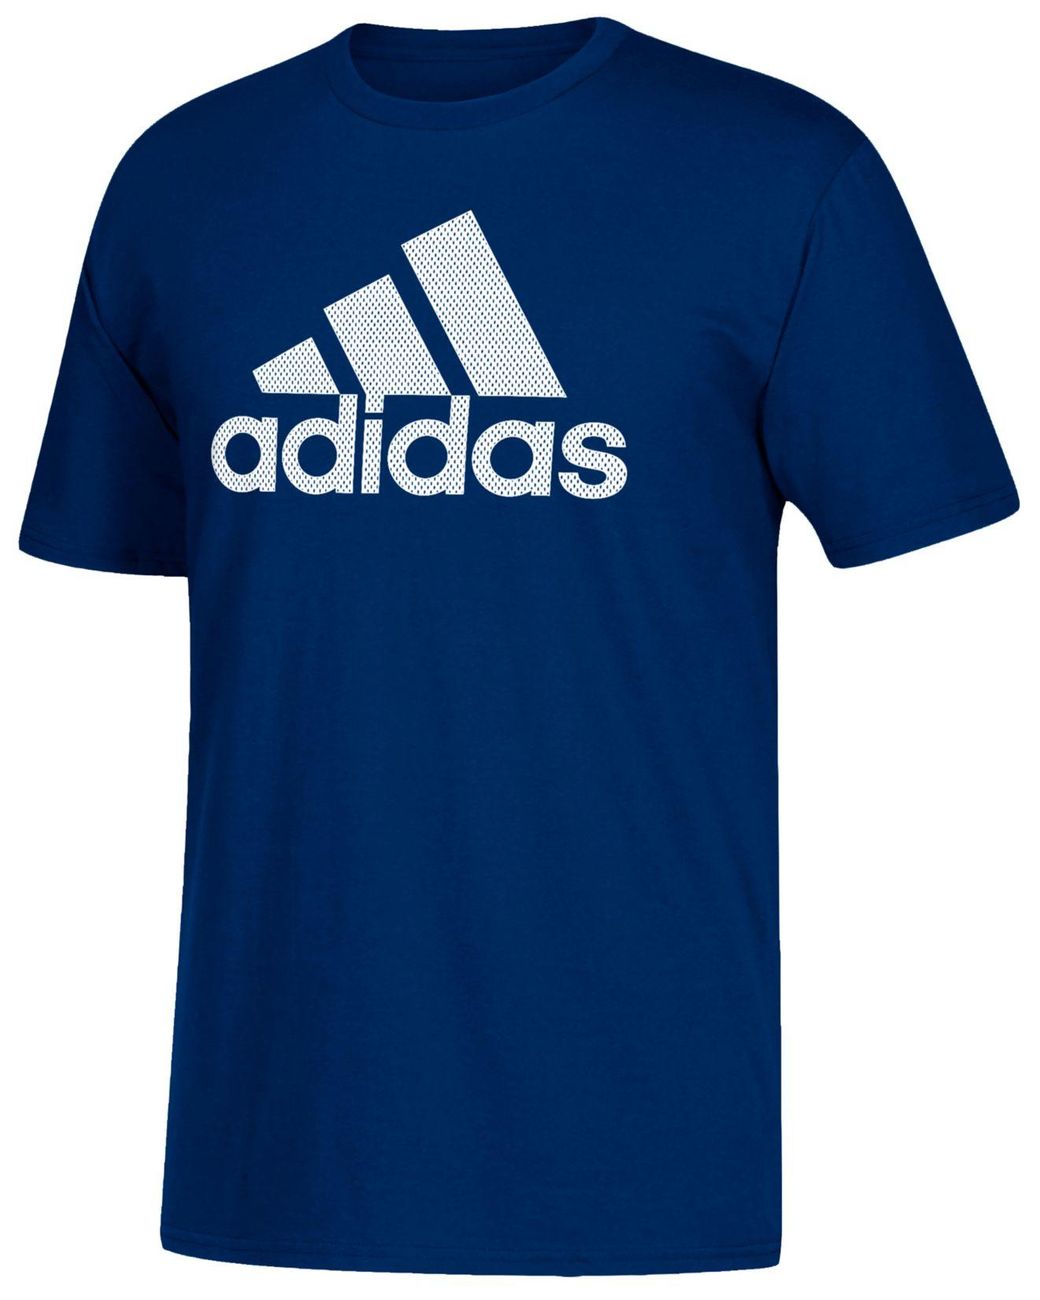 adidas Cotton Logo T-shirt in Dark Navy (Blue) for Men - Lyst